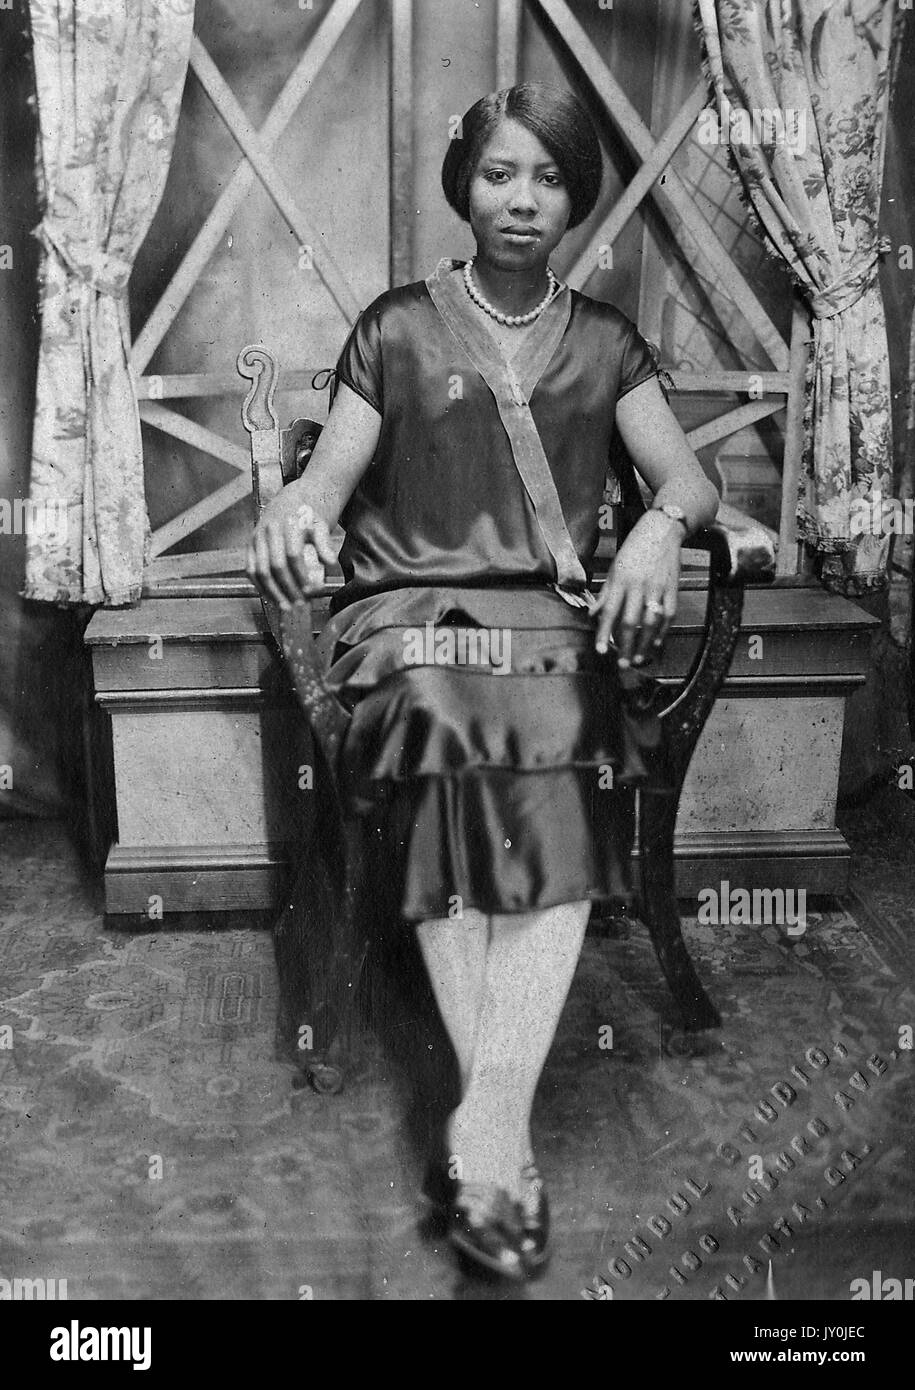 Porträt einer jungen afroamerikanischen Frau, die vor einem Fenster in einem Holzstuhl sitzt, ein dunkles Kleid und weiße Strumpfhosen trägt, ihre Arme auf den Armen des Stuhls ruhen, Atlanta, Georgia, 1915. Stockfoto